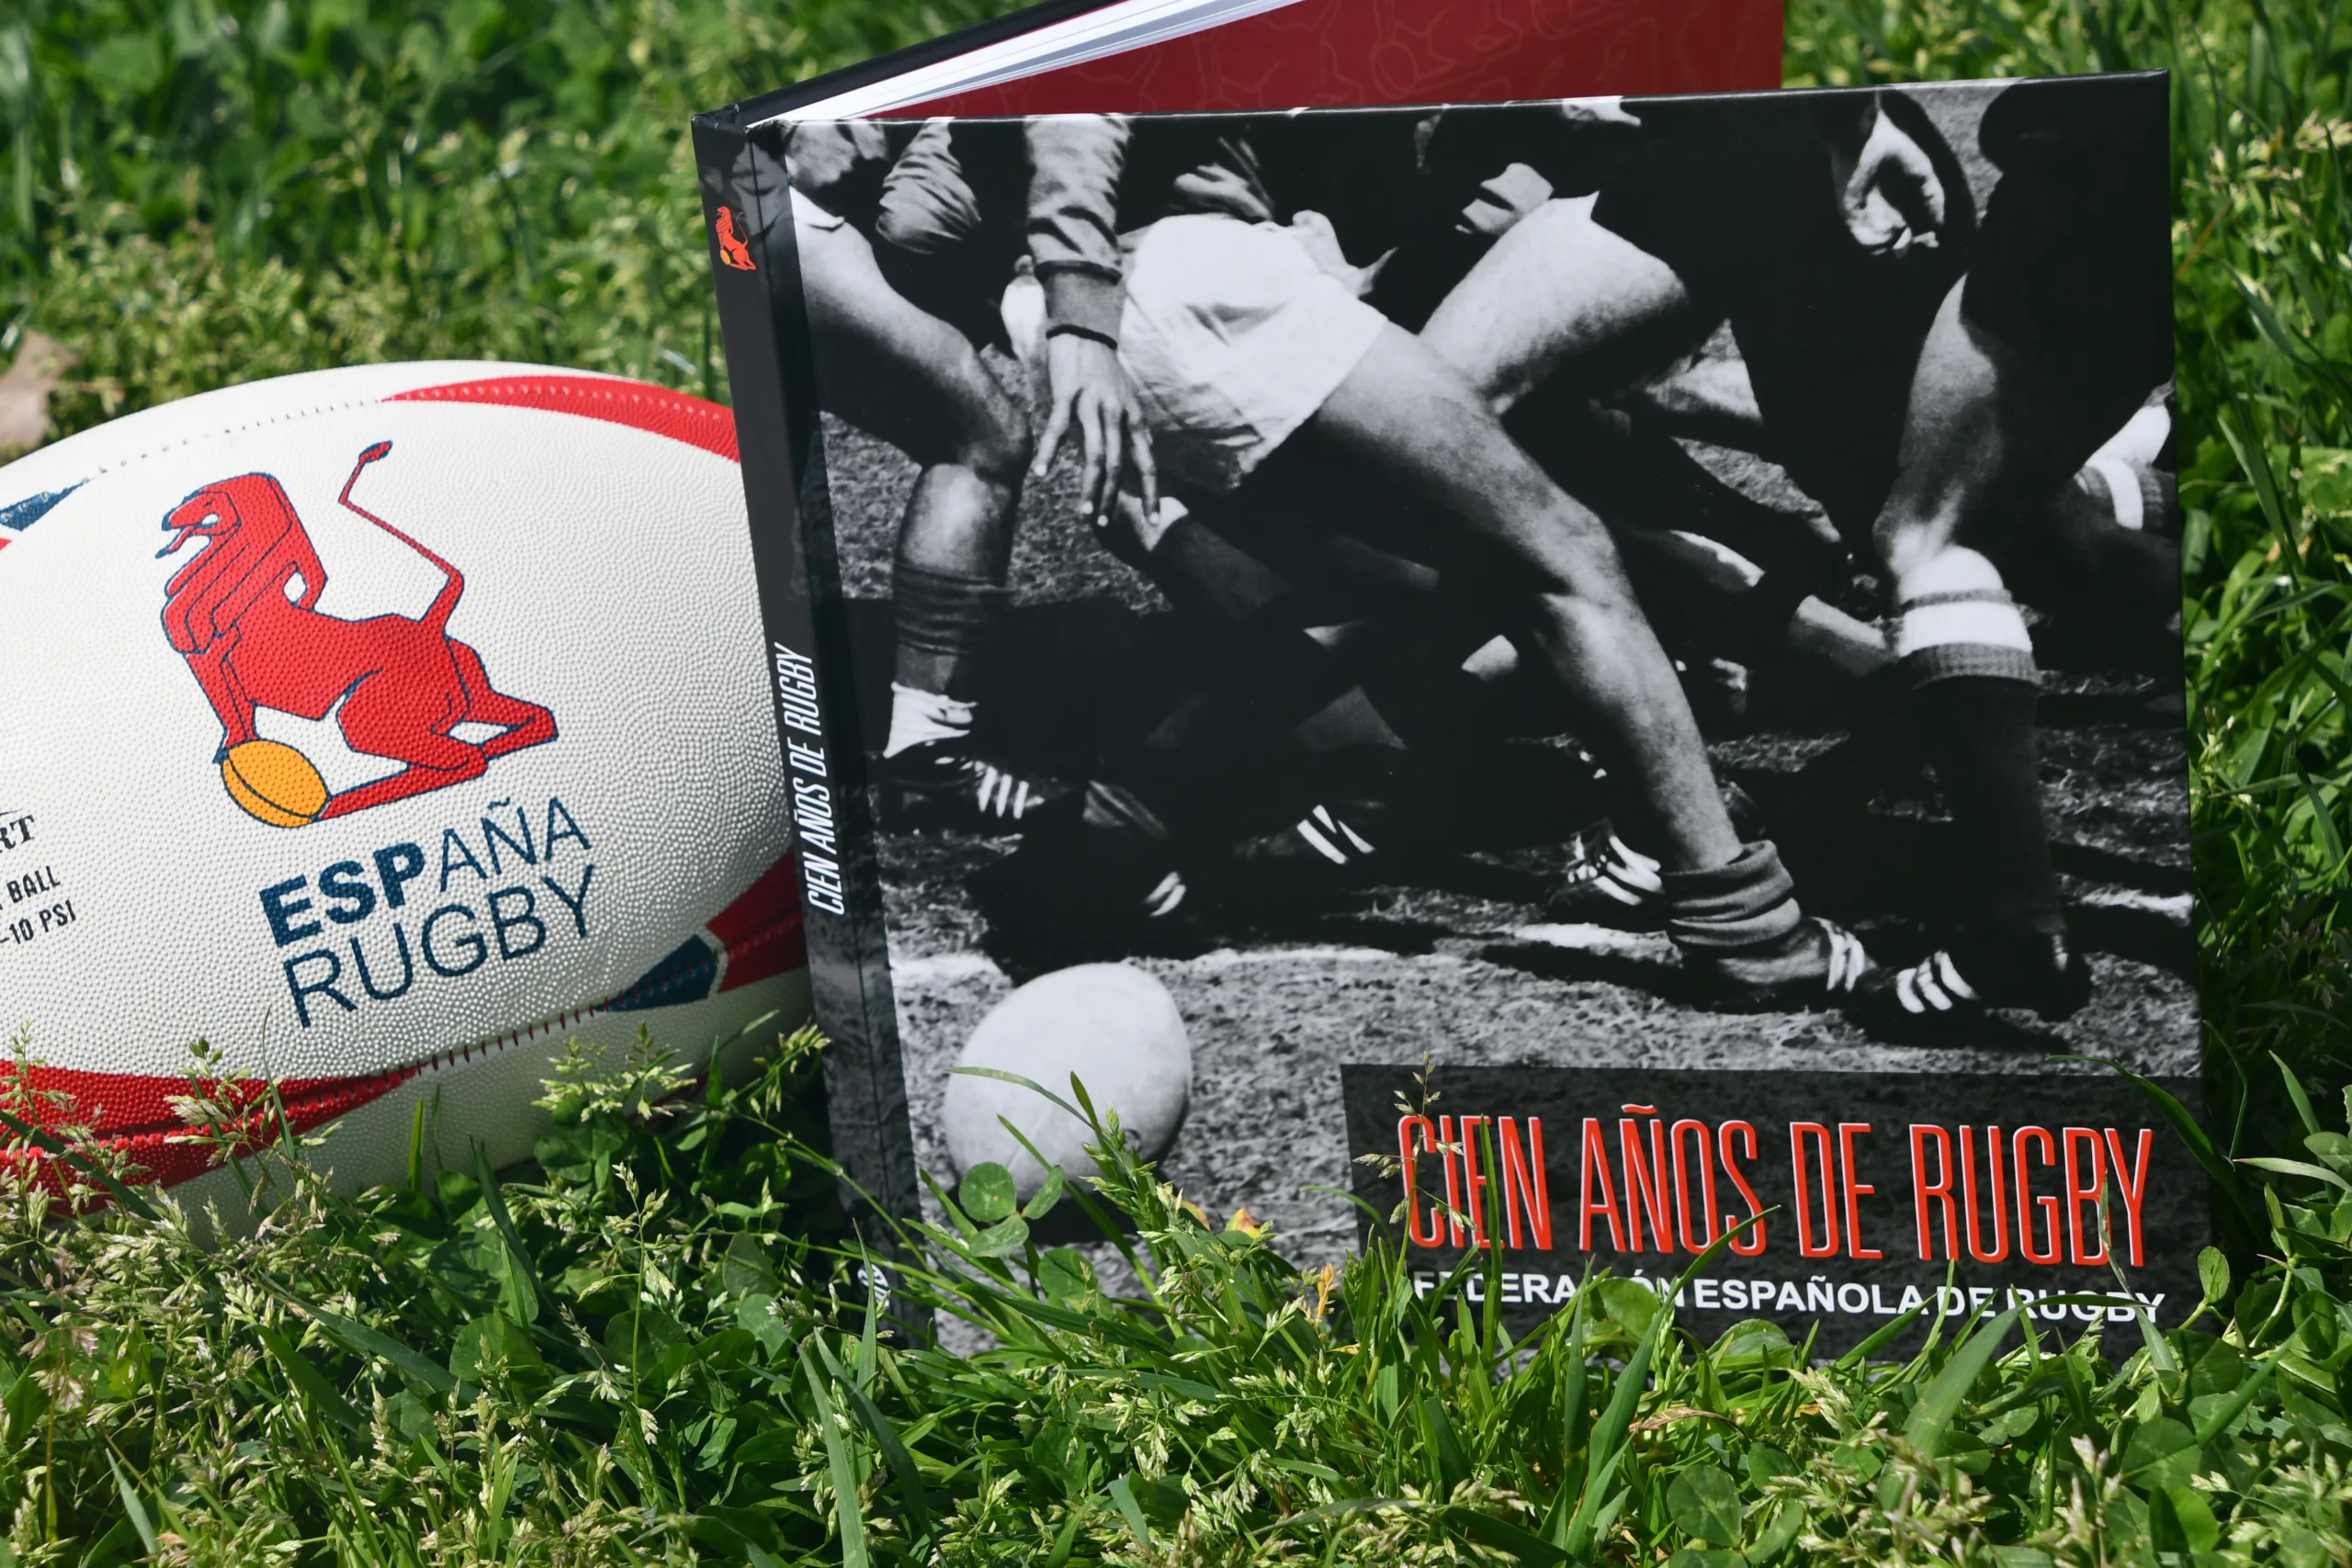 Cien años de rugby, un libro para honrar la historia del oval español